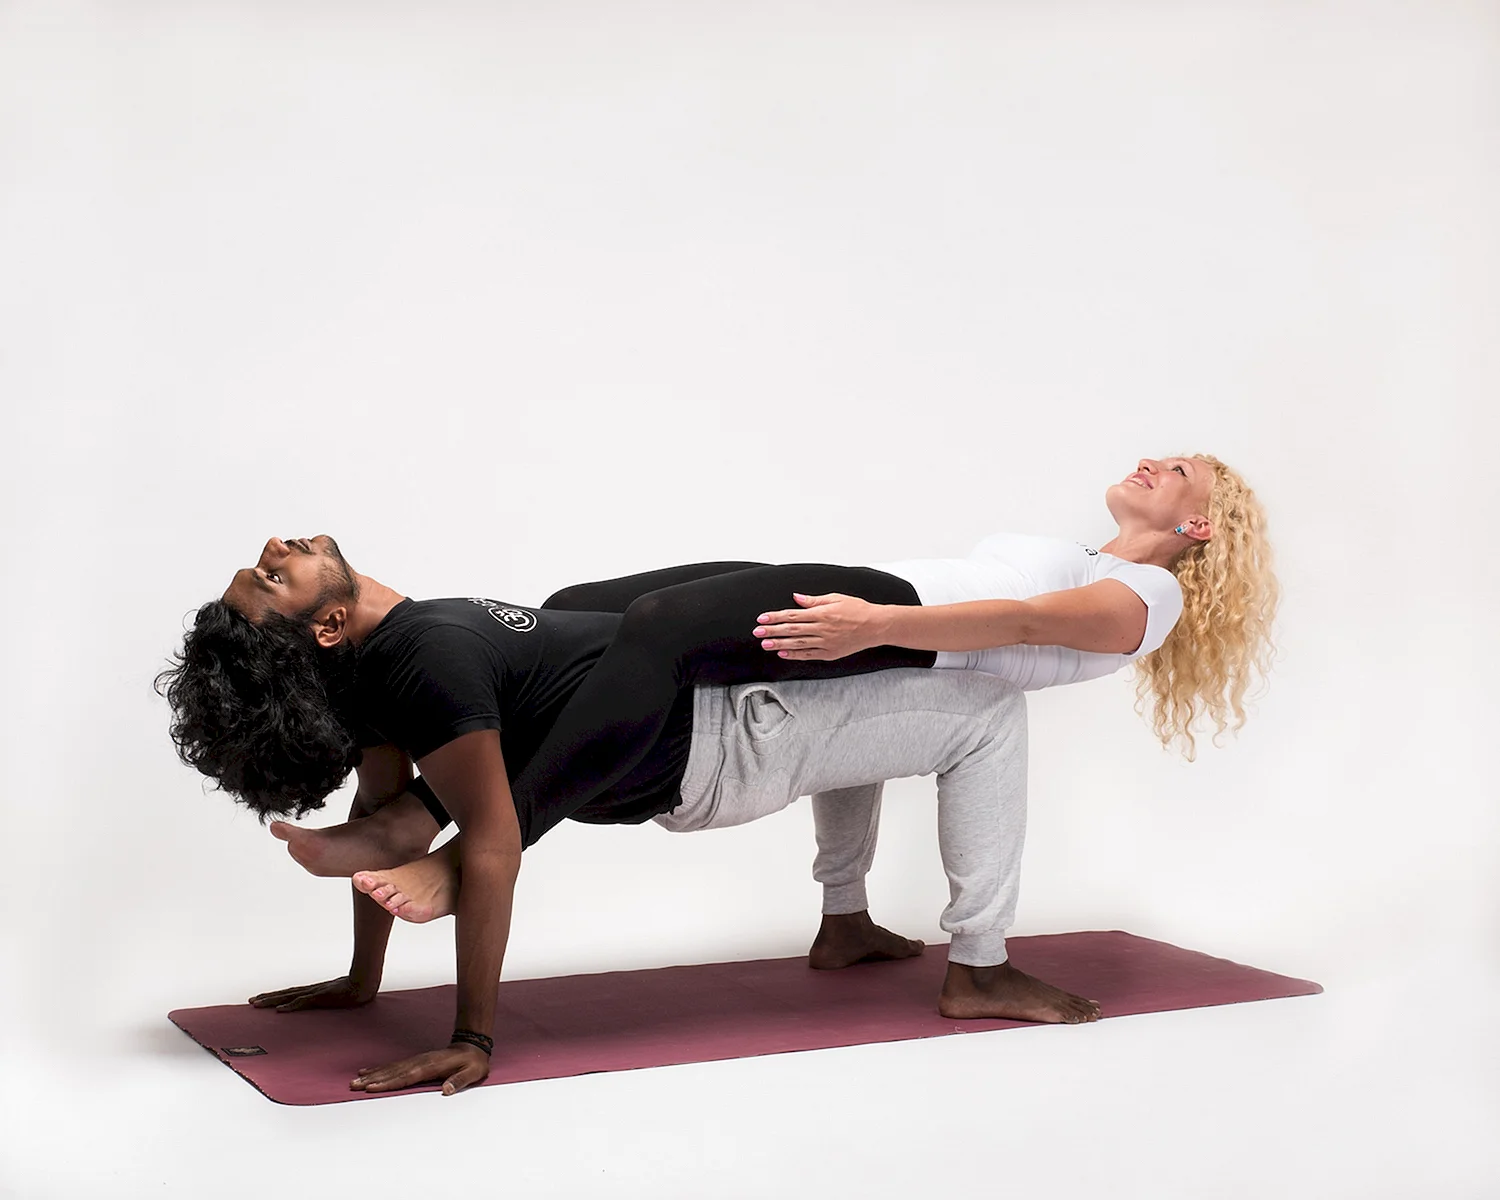 Йога для двоих - 10 упражнений для укрепления тела и доверия